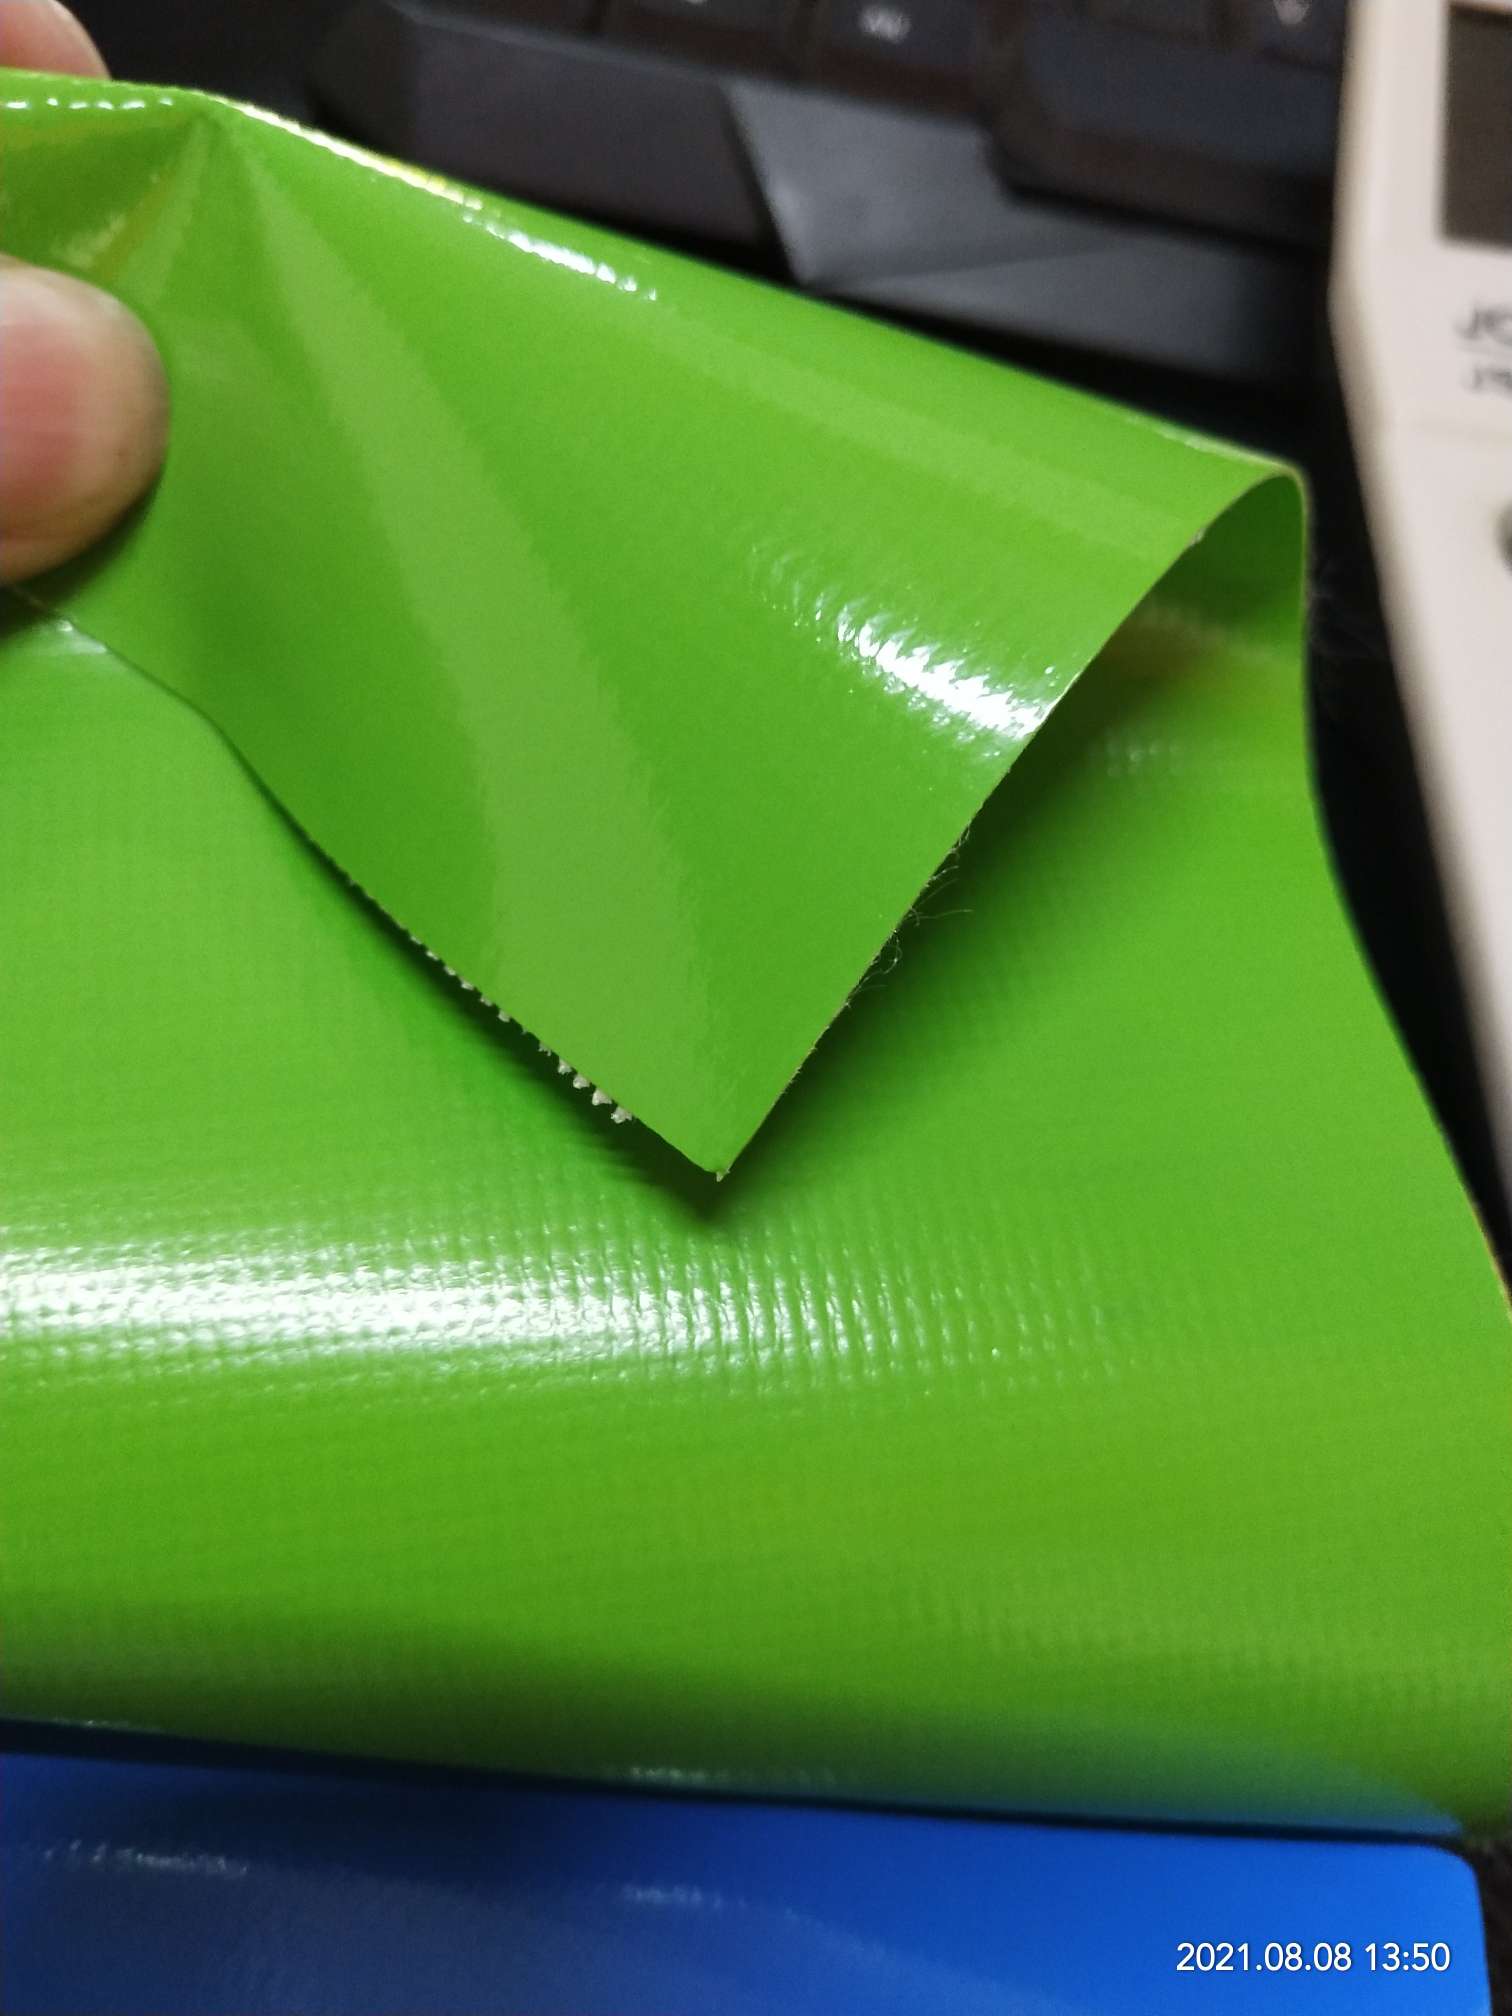 优质光面0.47mm厚浅绿色PVC夹网布  箱包布  机器罩家具罩  体育游乐产品  格种箱包袋专用面料详情图2